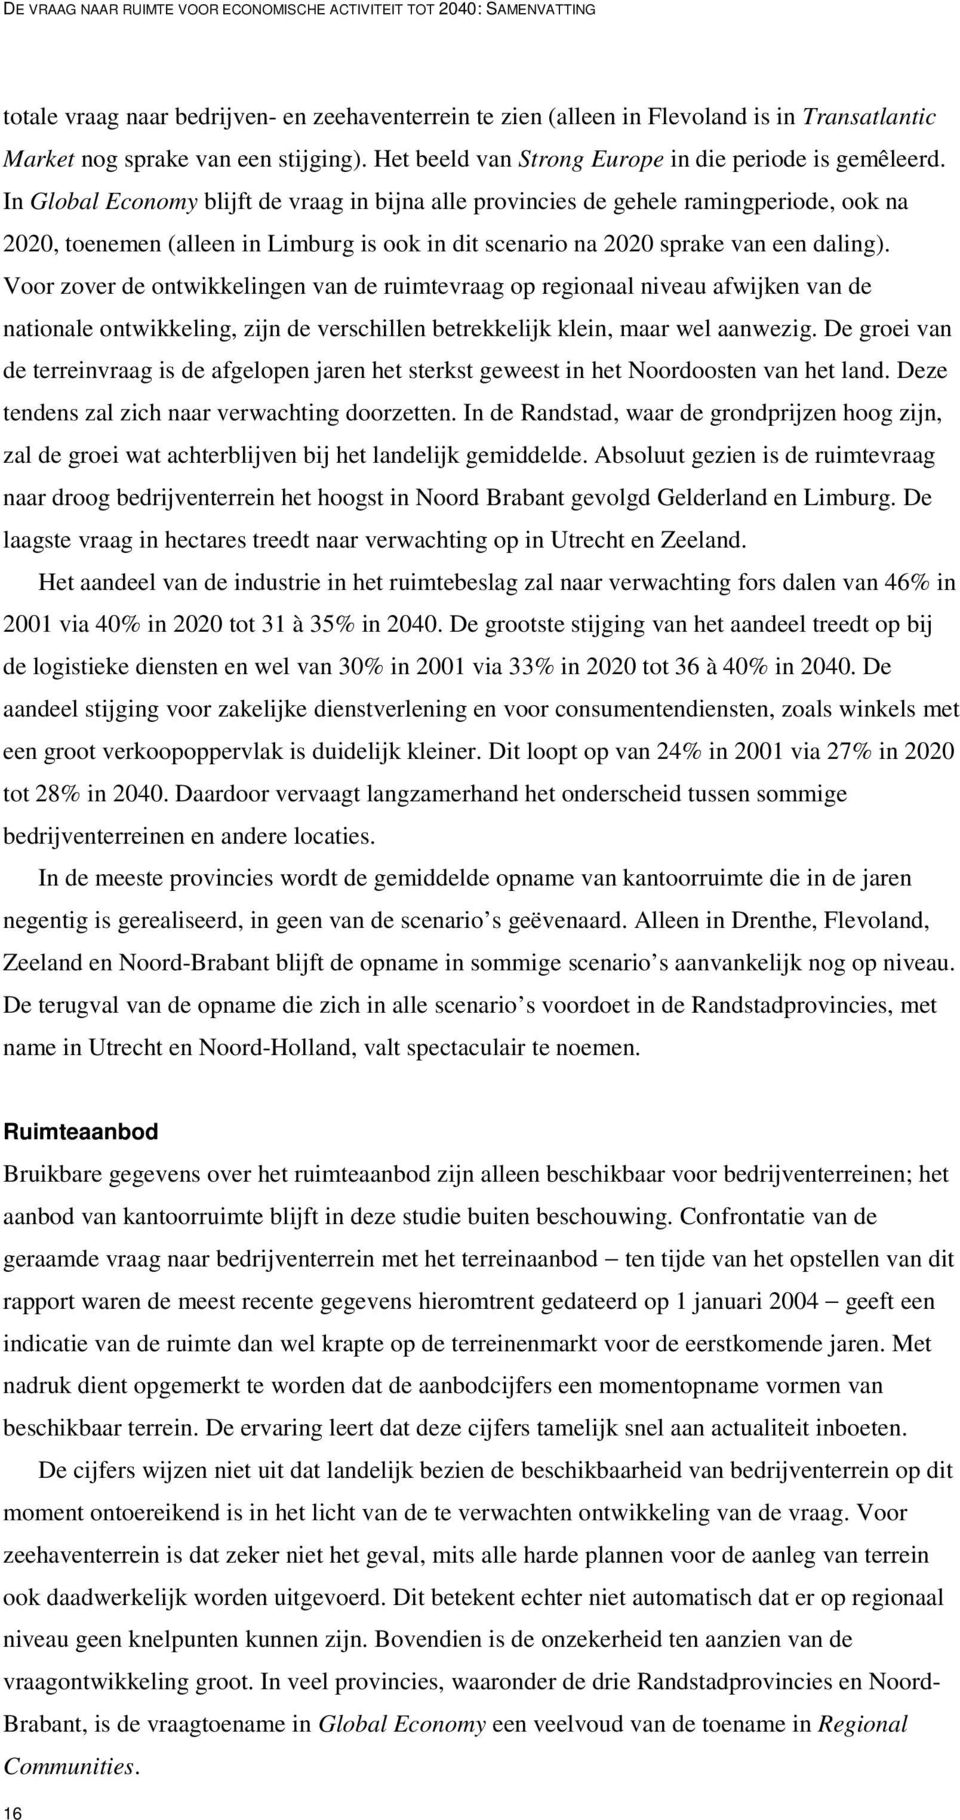 In Global Economy blijft de vraag in bijna alle provincies de gehele ramingperiode, ook na 2020, toenemen (alleen in Limburg is ook in dit scenario na 2020 sprake van een daling).